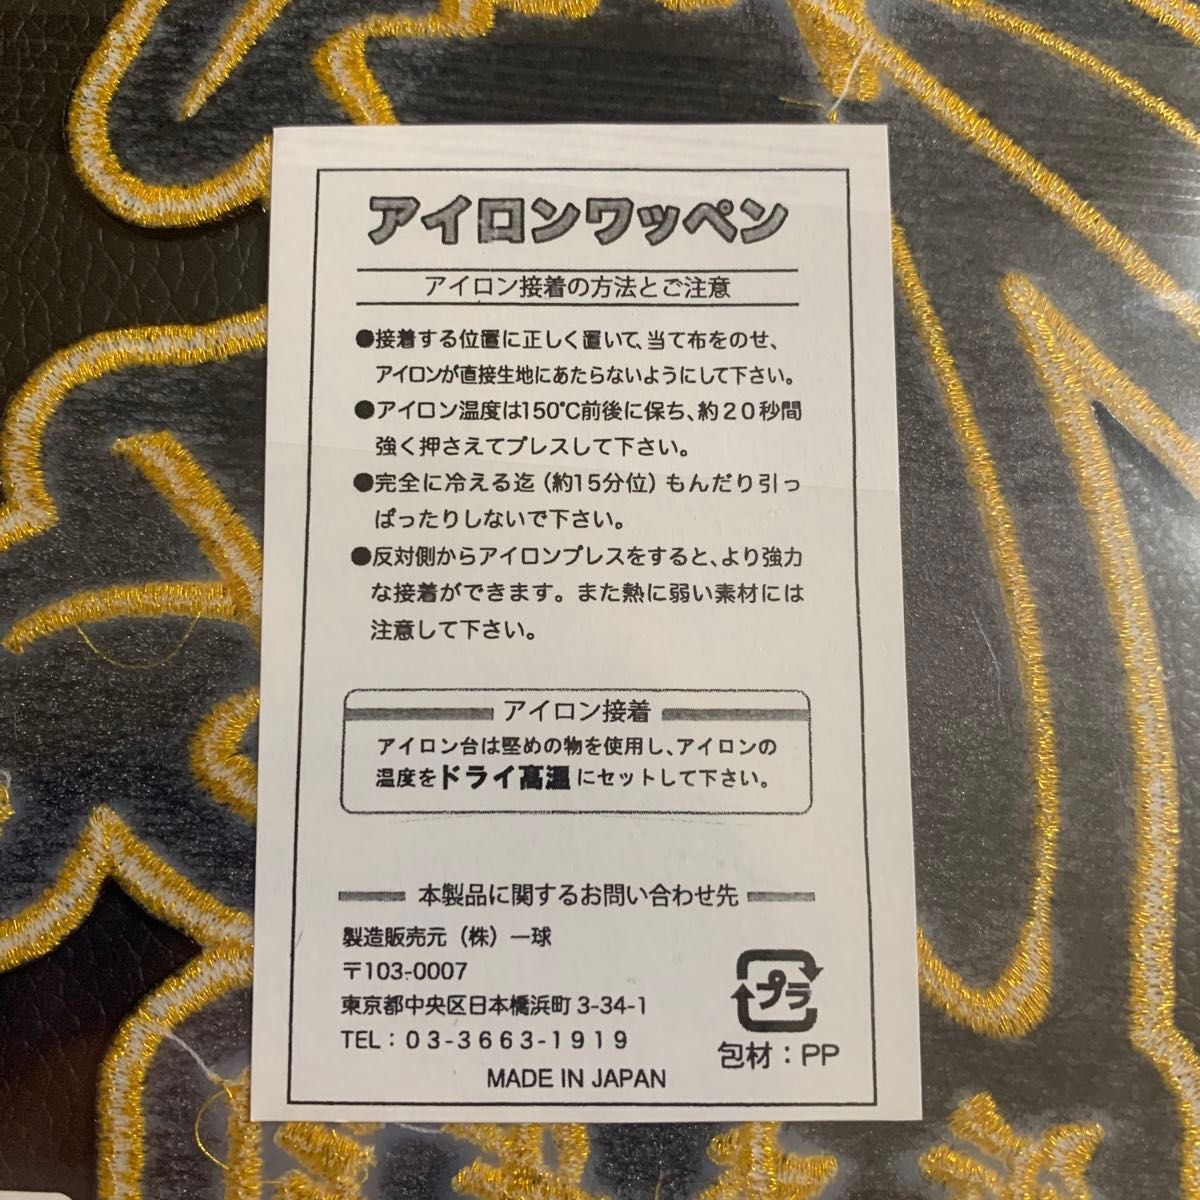 阪神タイガース  選手サイン ワッペン  近本 選手  5  新品未開封